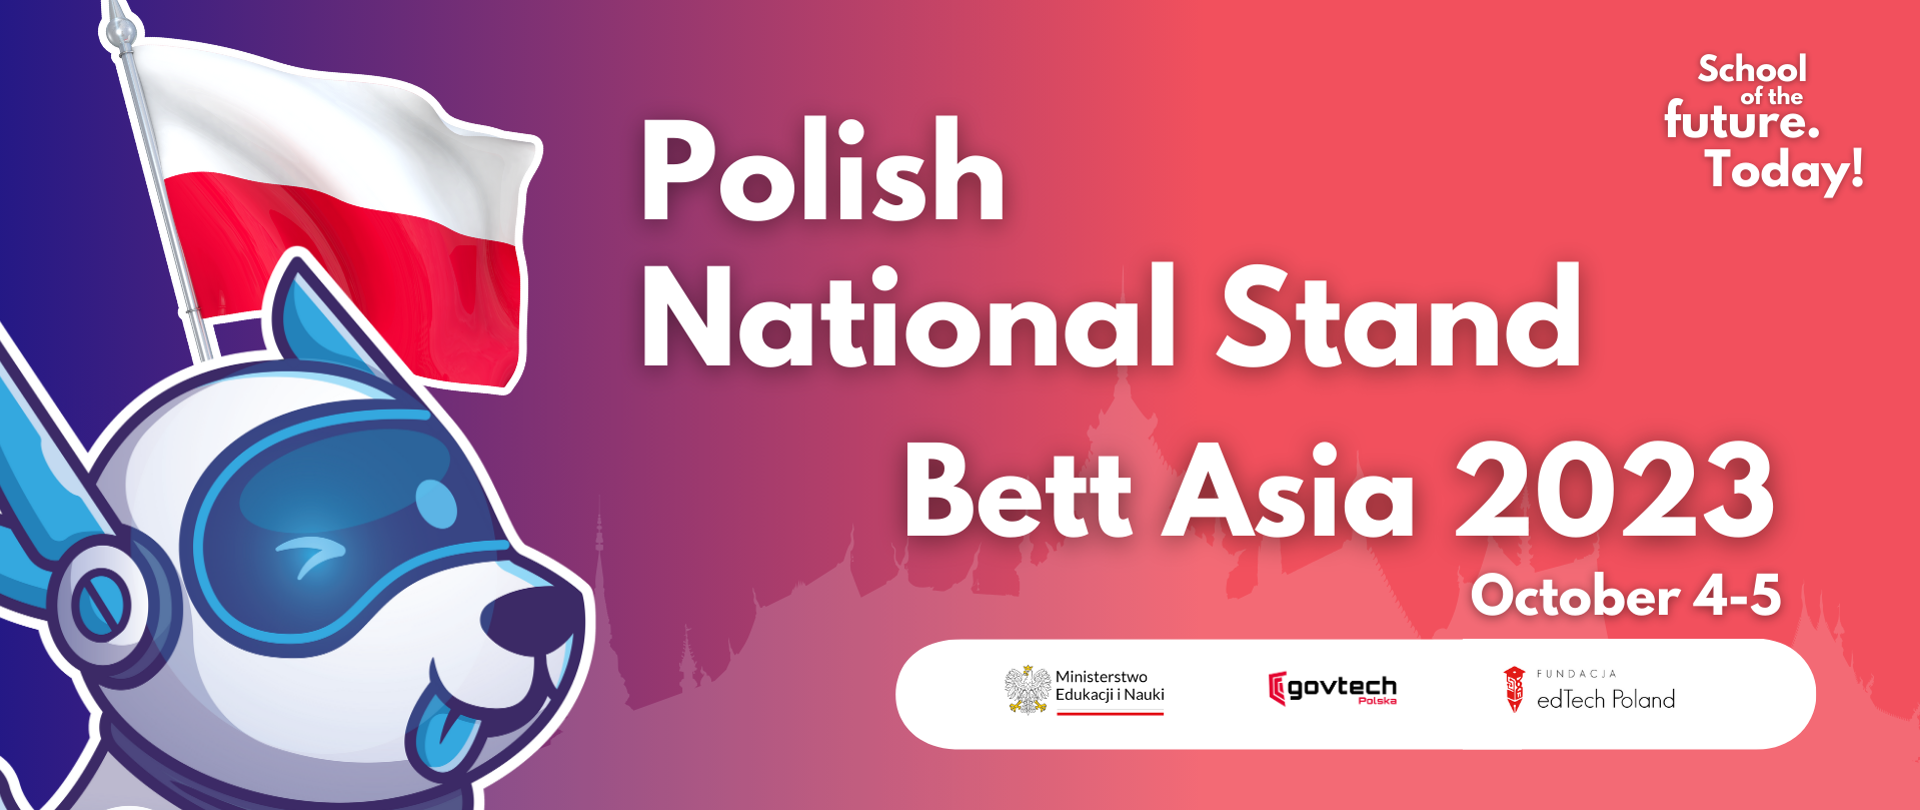 Polish National Stand